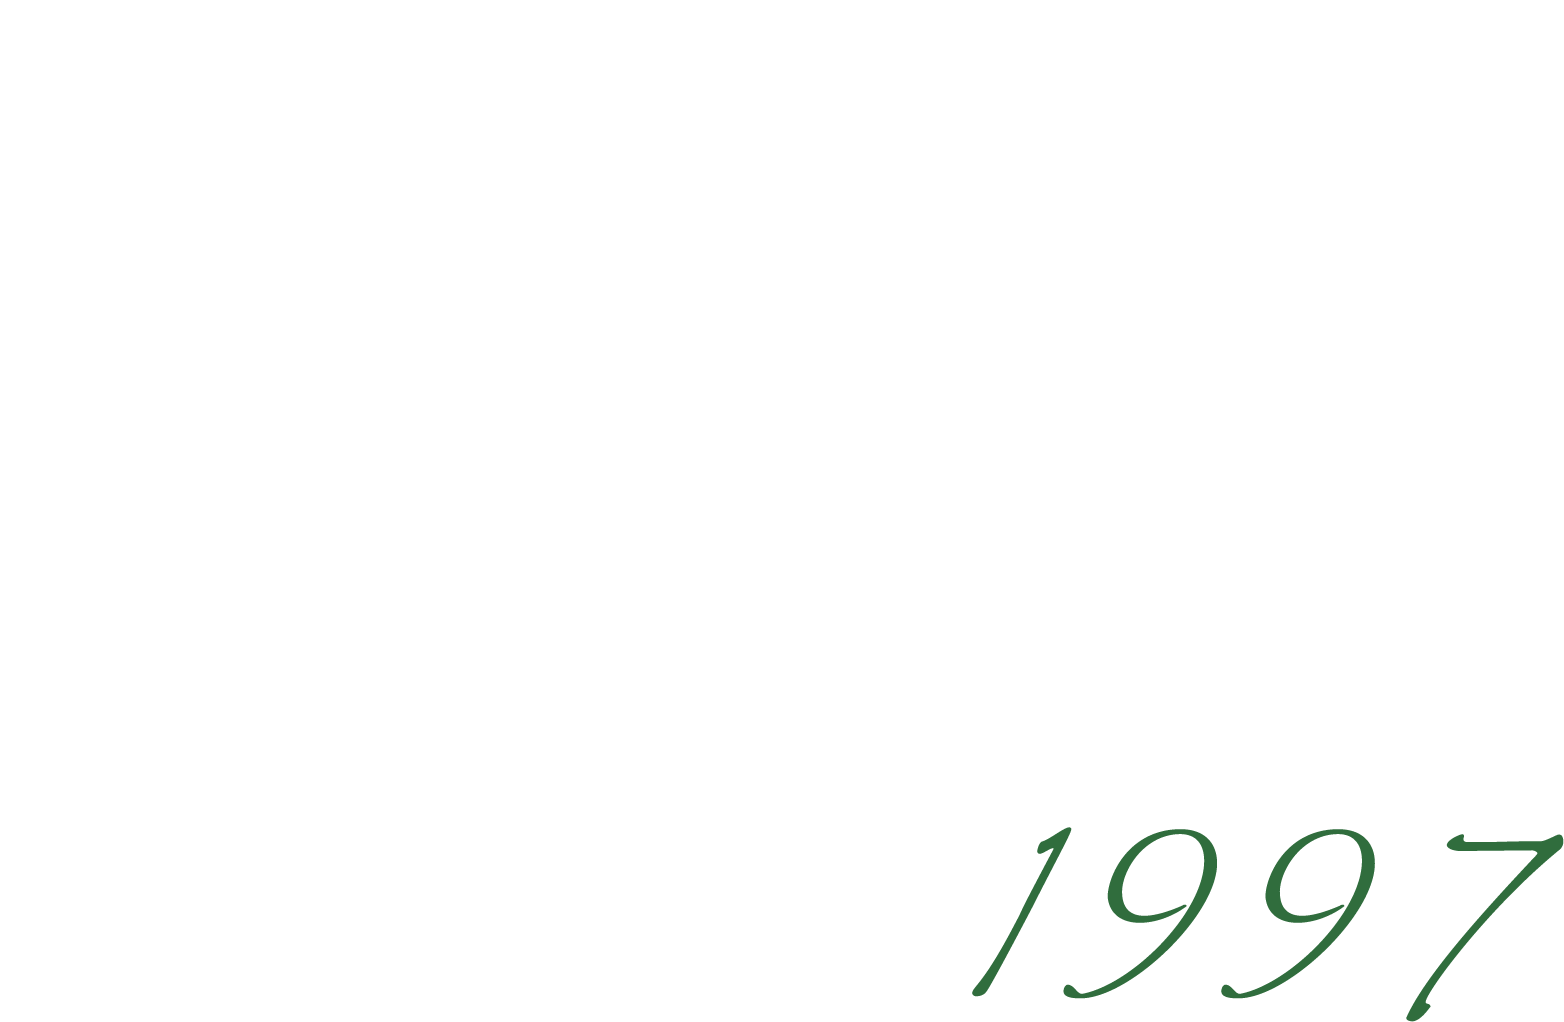 JUNGLE RUNNER 1997